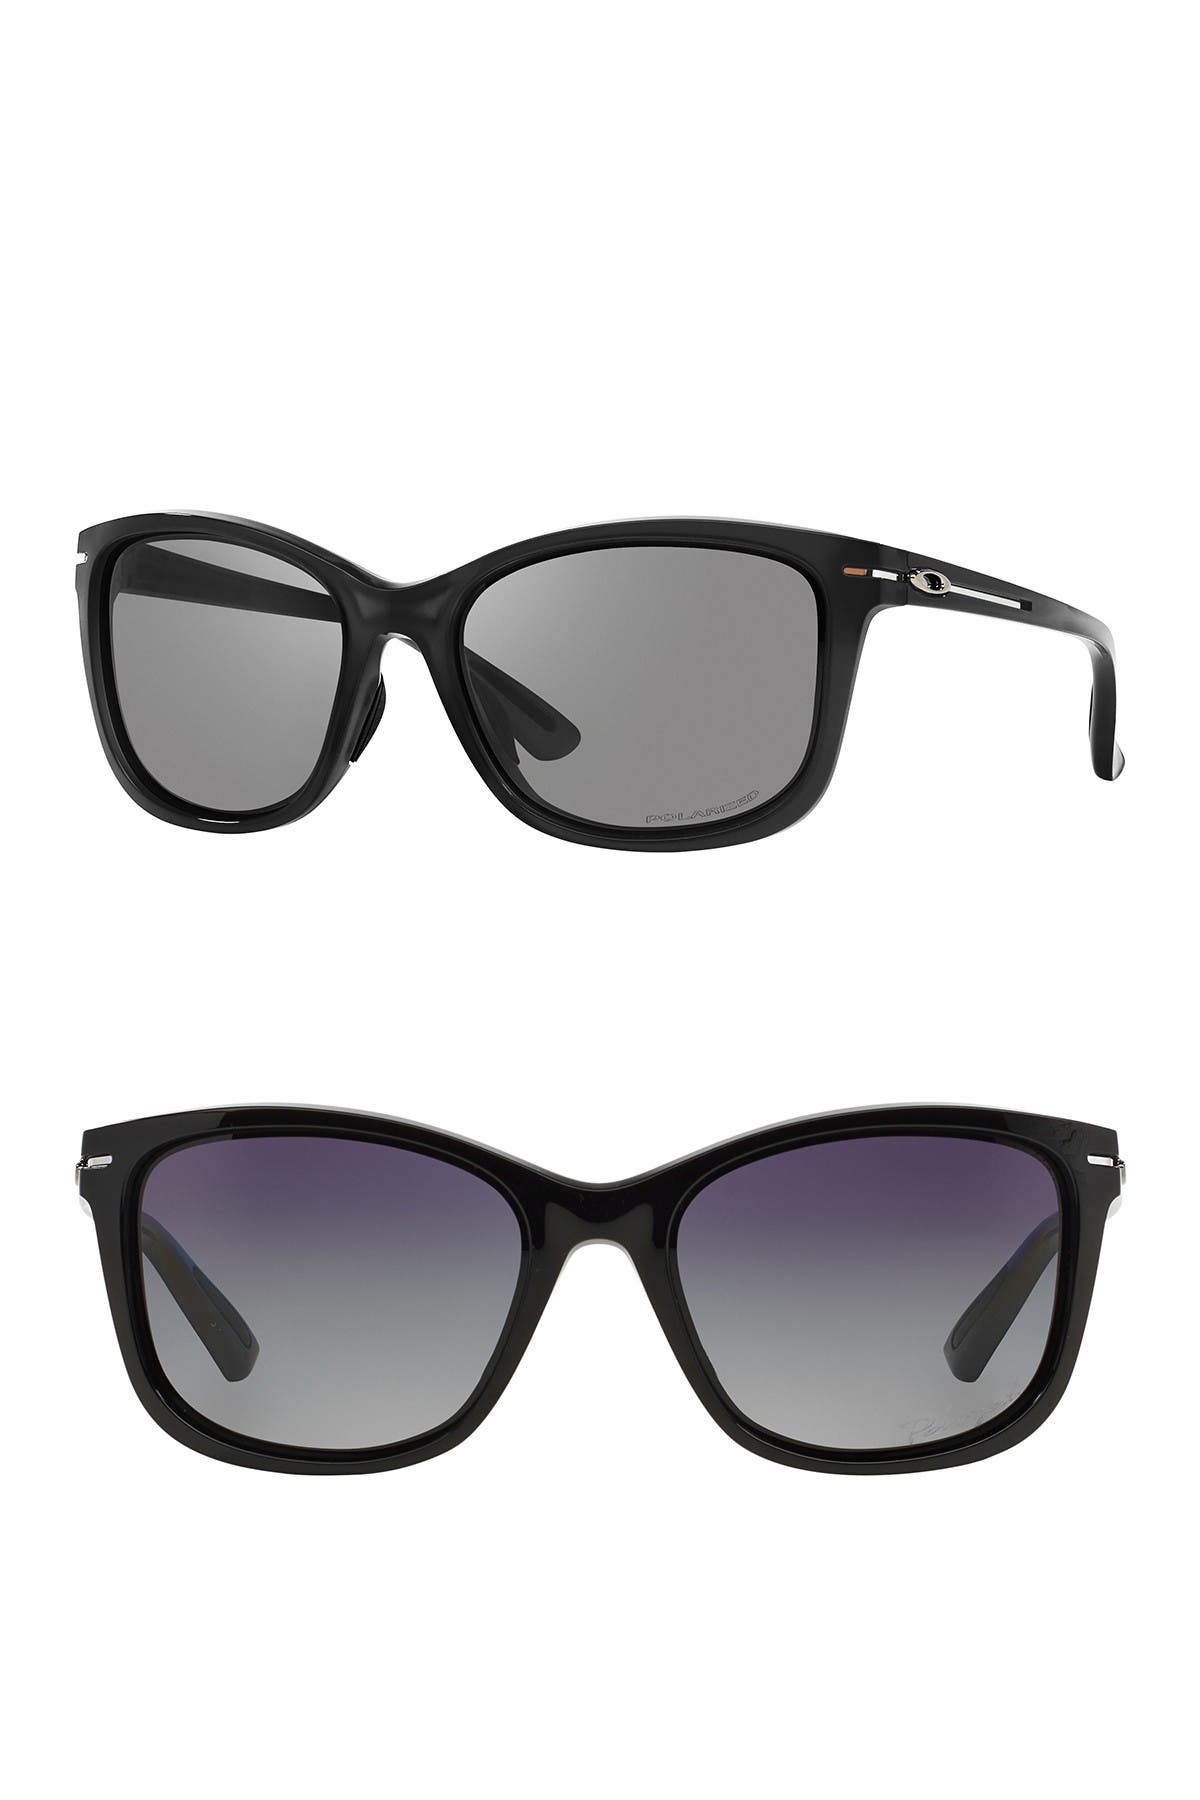 oakley women's drop in sunglasses